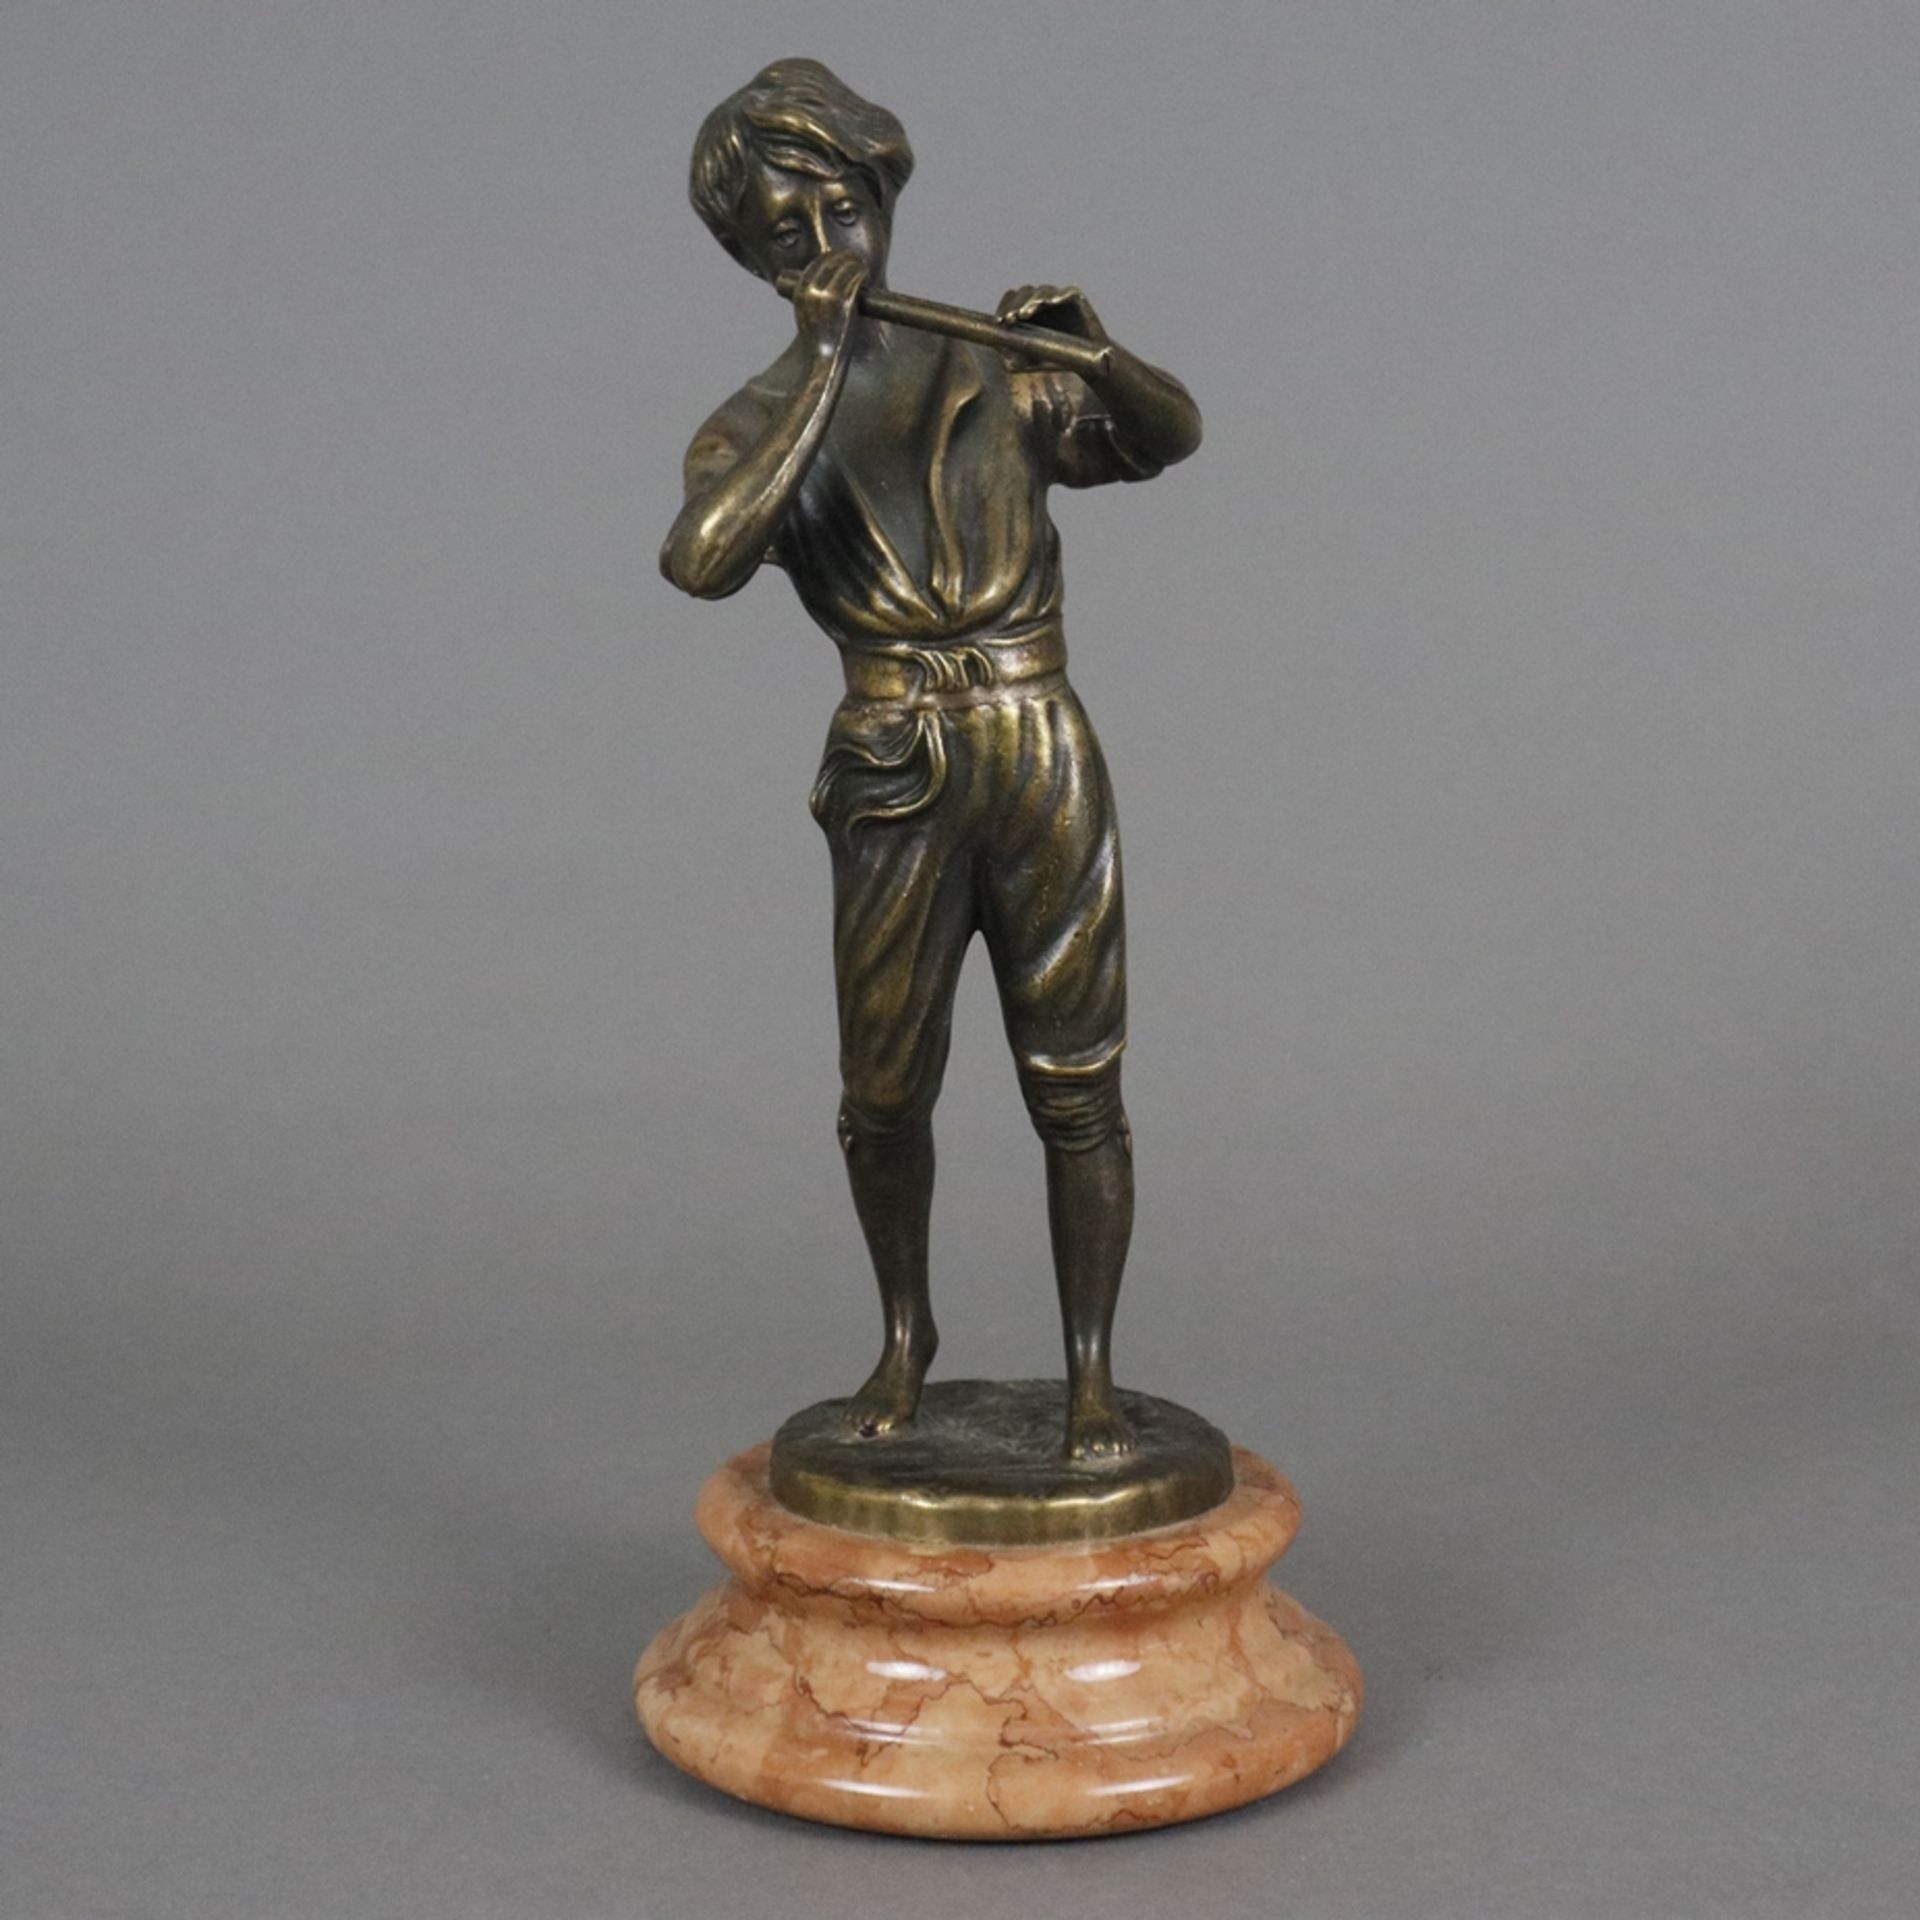 Flötenspieler - Gießerei "Lancini", Italien 20. Jh., Bronze, braun patiniert, vollrunde Figur eines